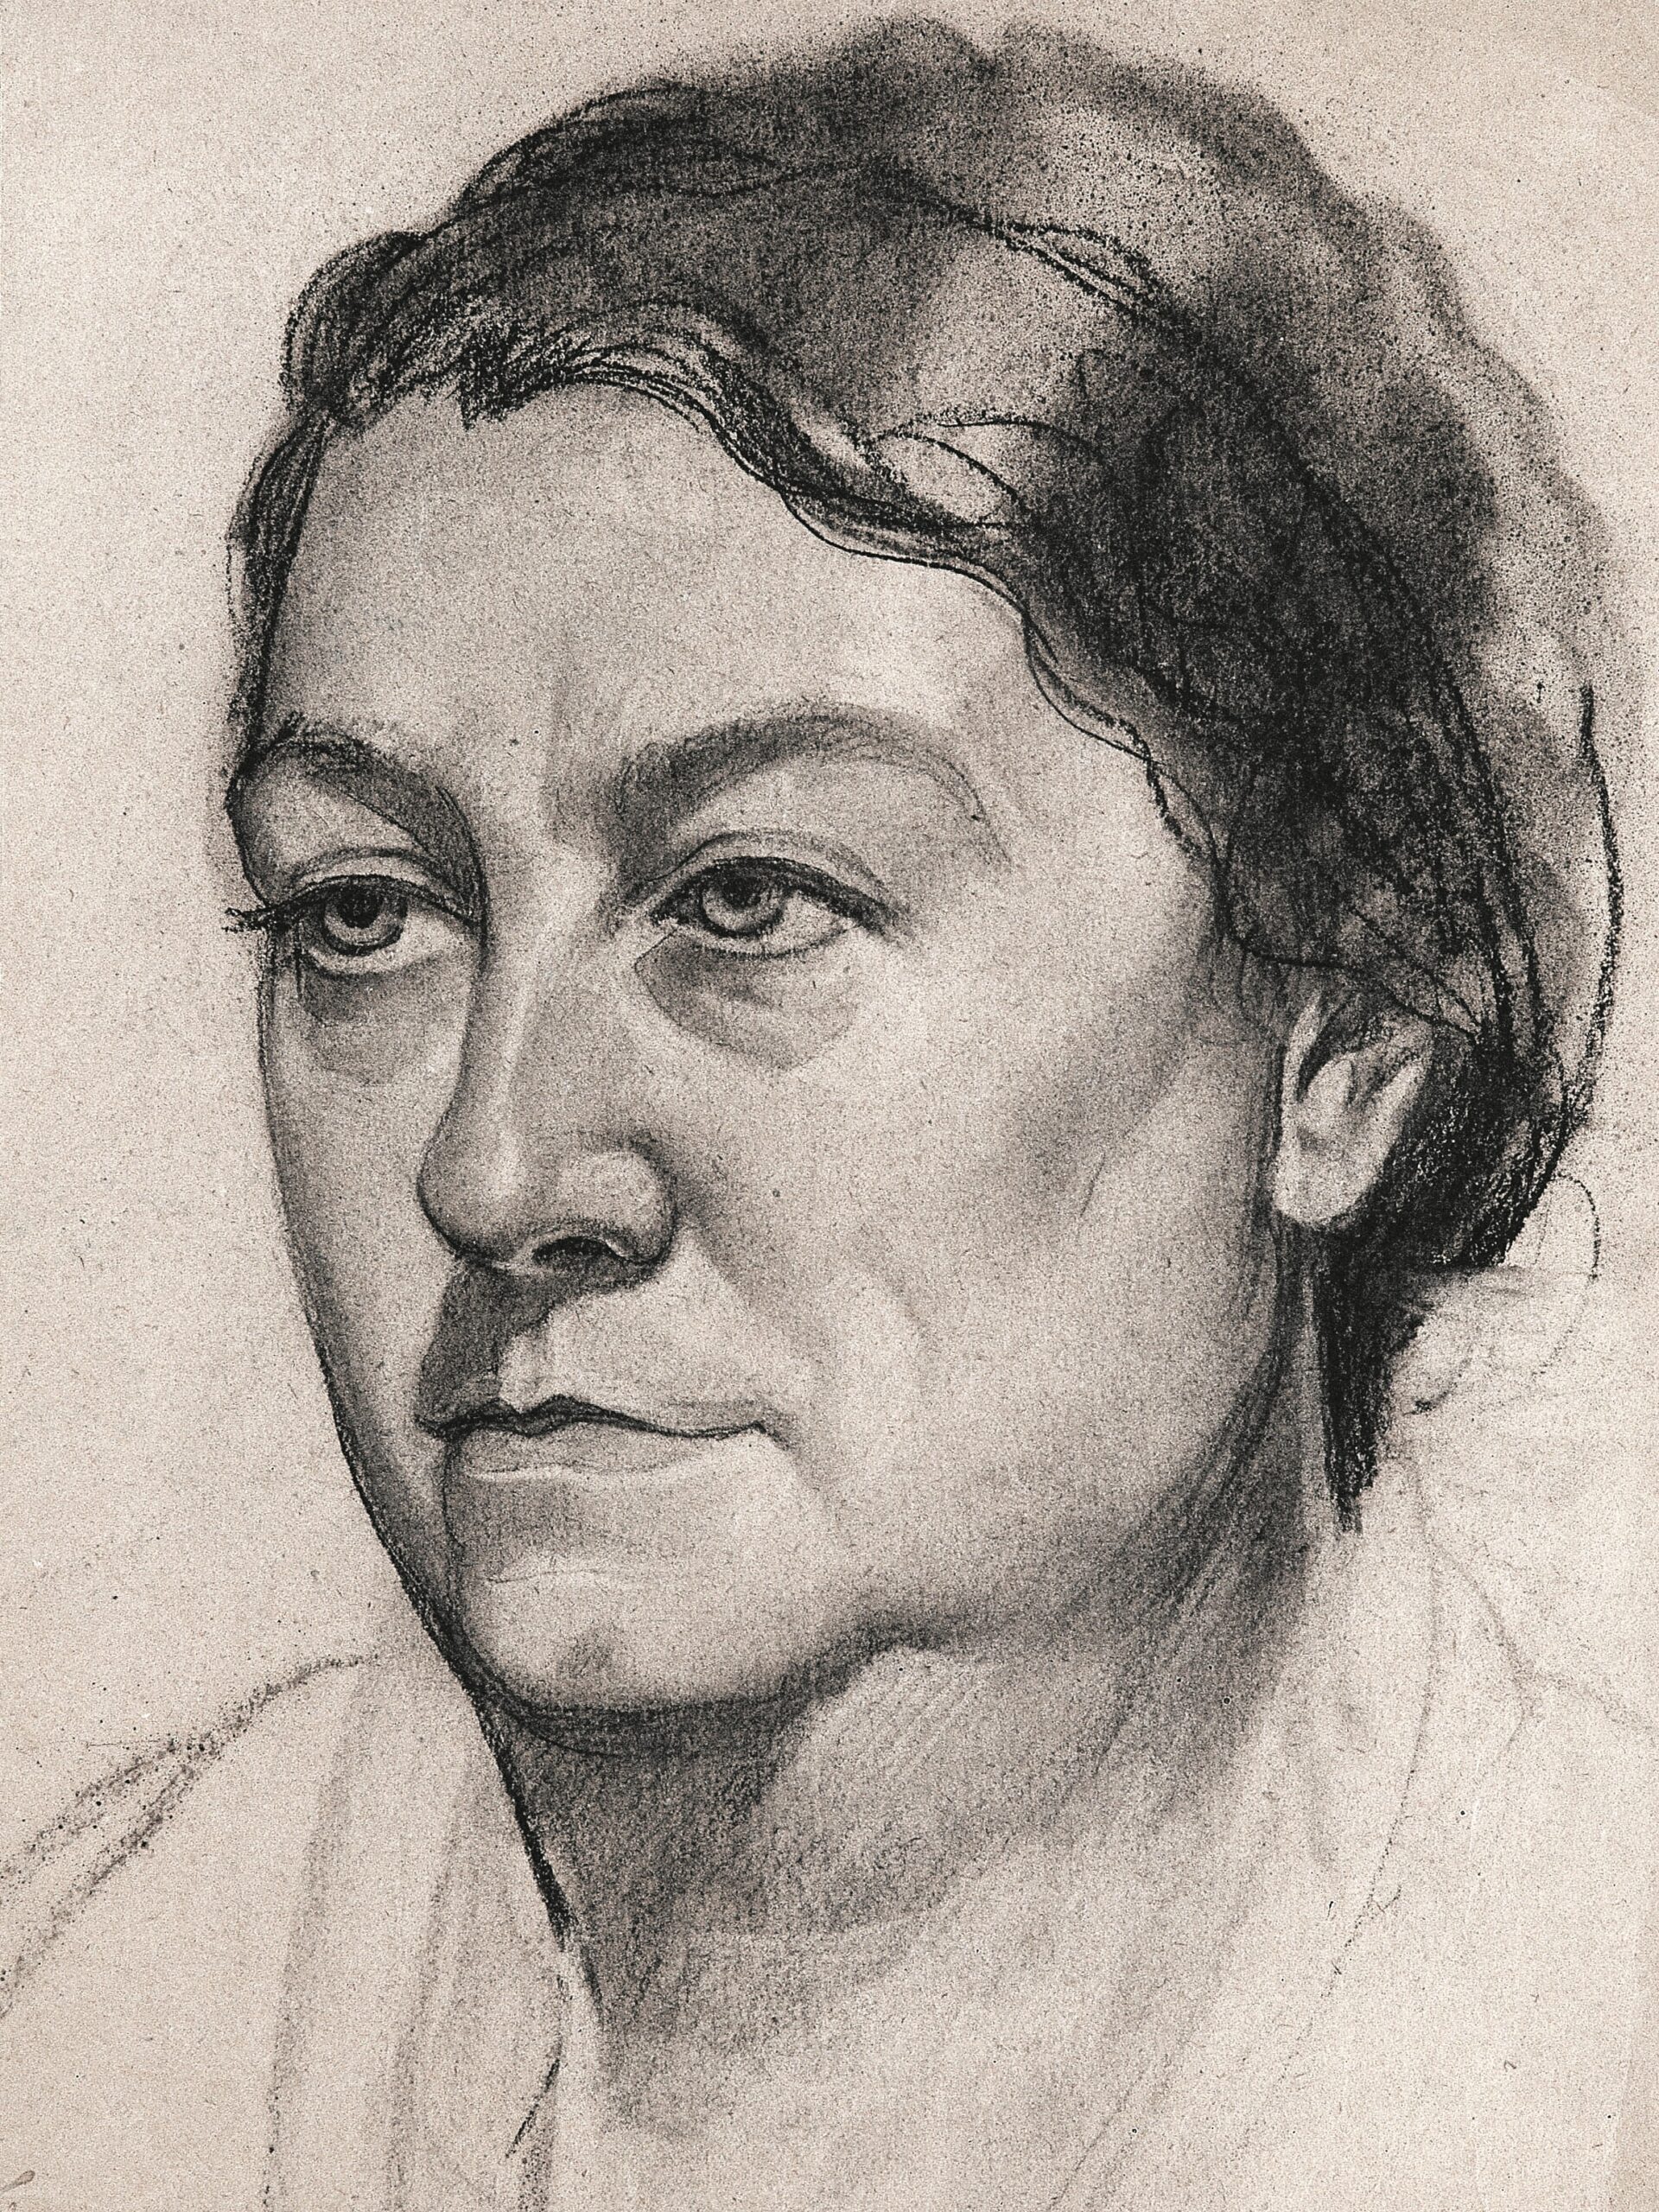 Dibujo de José Manaut titulado Carolina Arranz, 1937. Lápiz sobre papel.